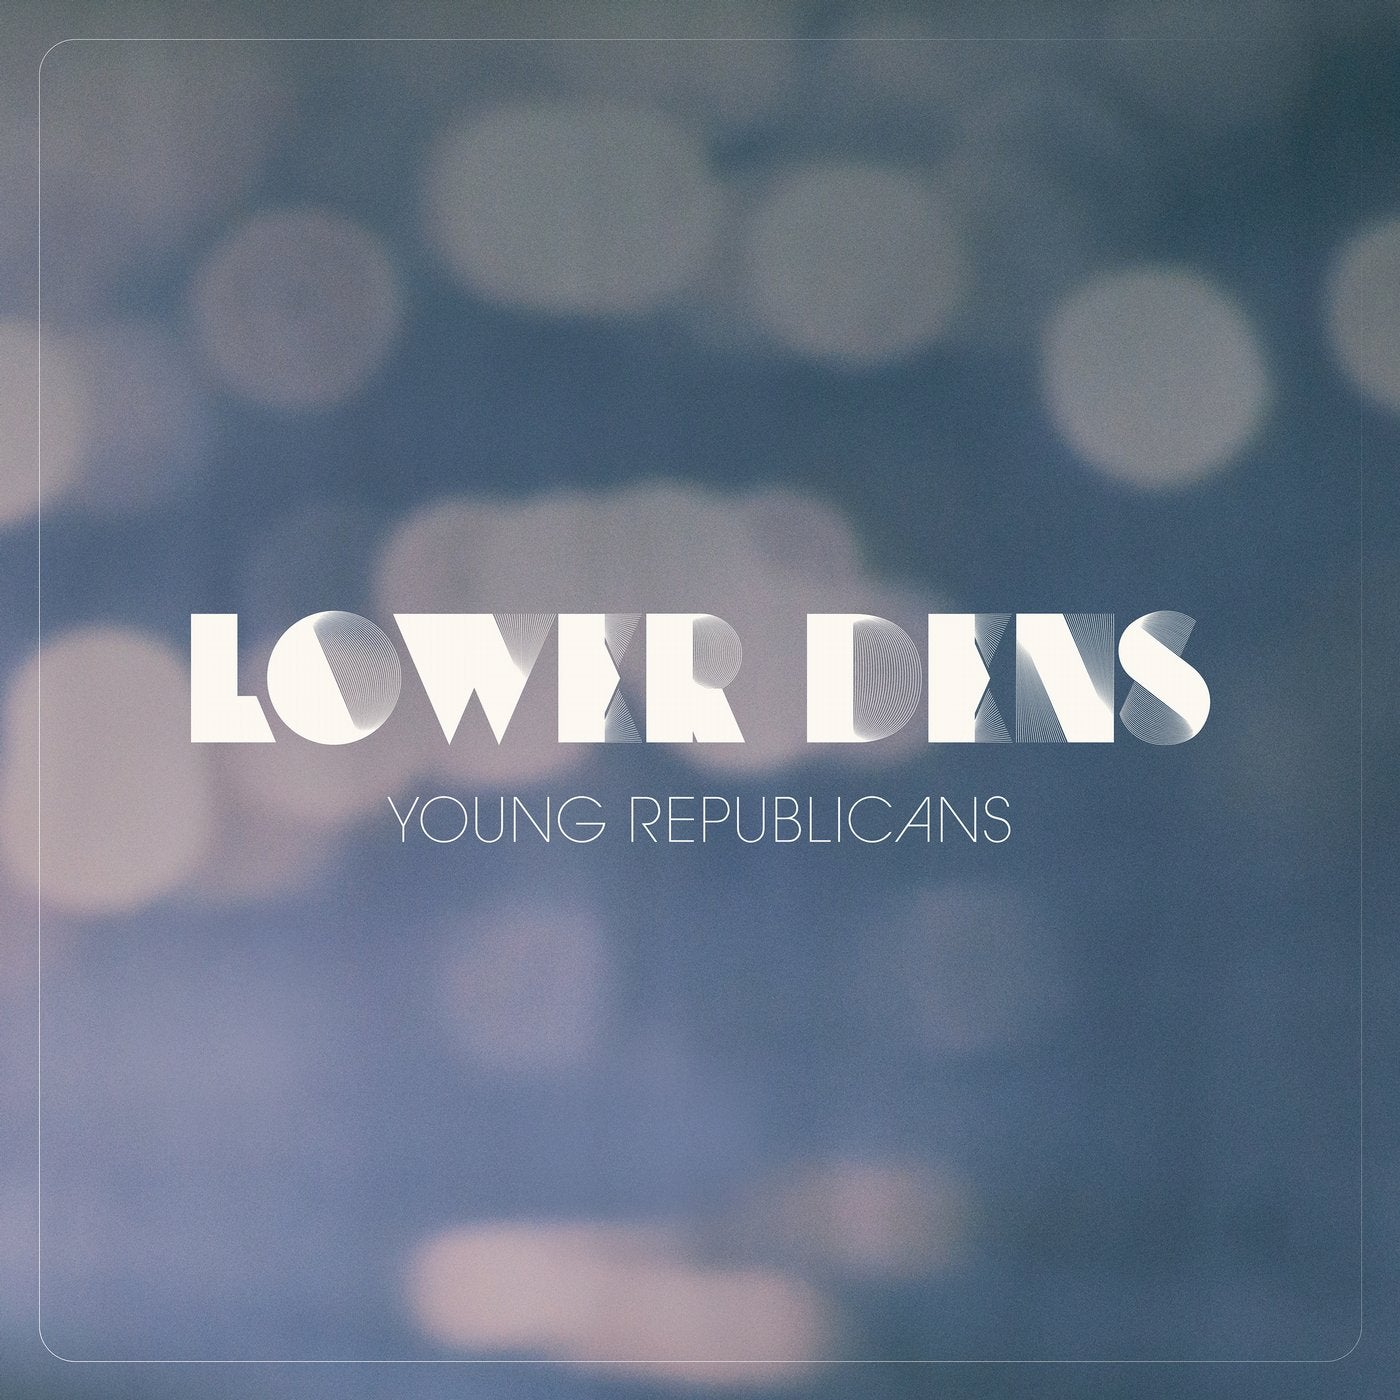 Young Republicans